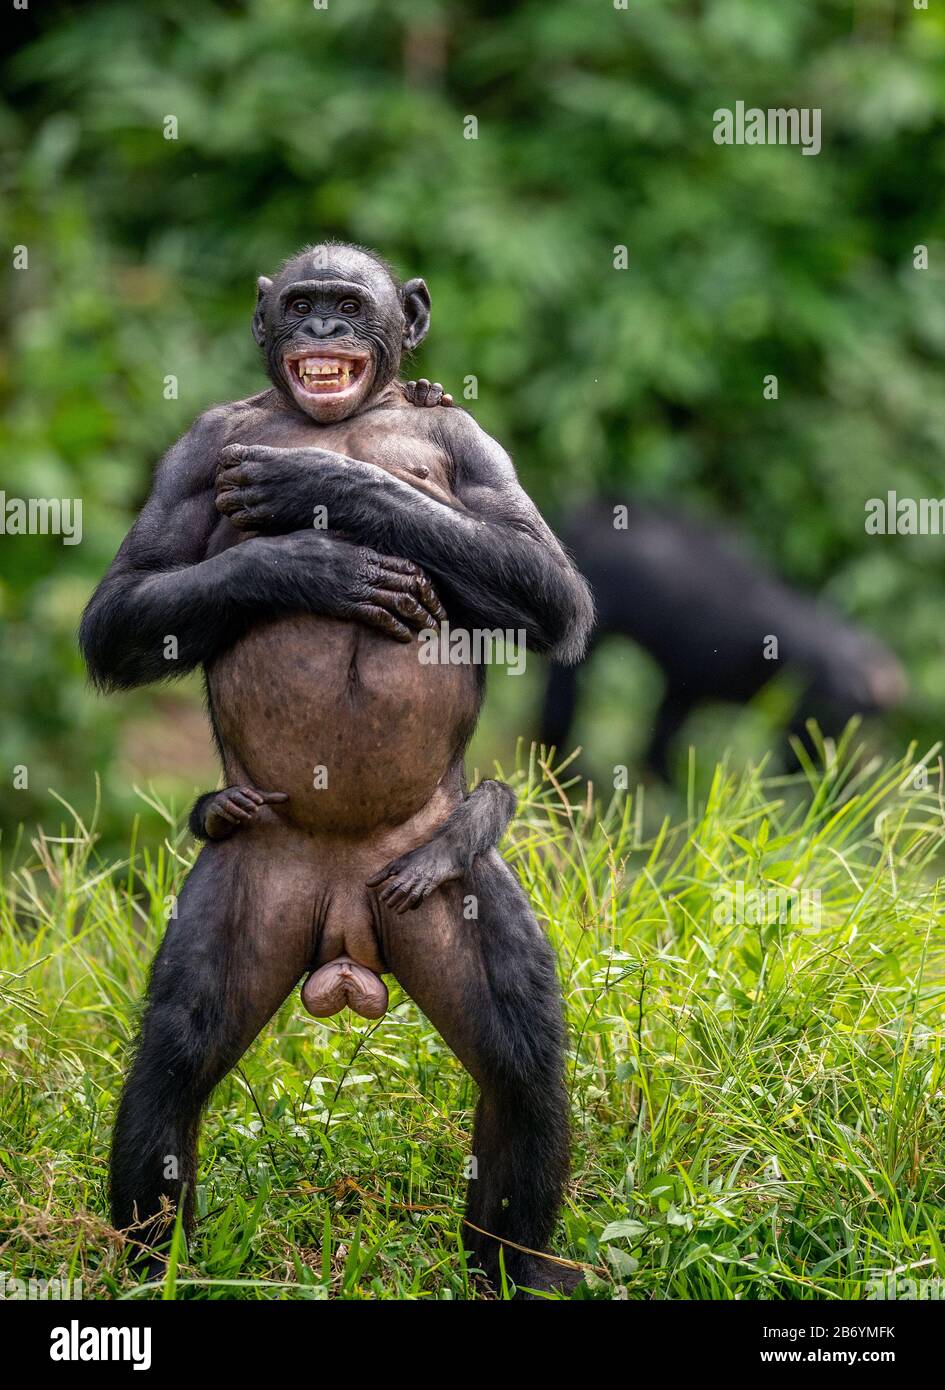 Die Bonobo-Mutter mit Quader auf тhe Rücken, die auf ihren Beinen steht. Bonobo, wissenschaftlicher Name: Paniskus. Demokratische Republik Kongo. Afrika Stockfoto